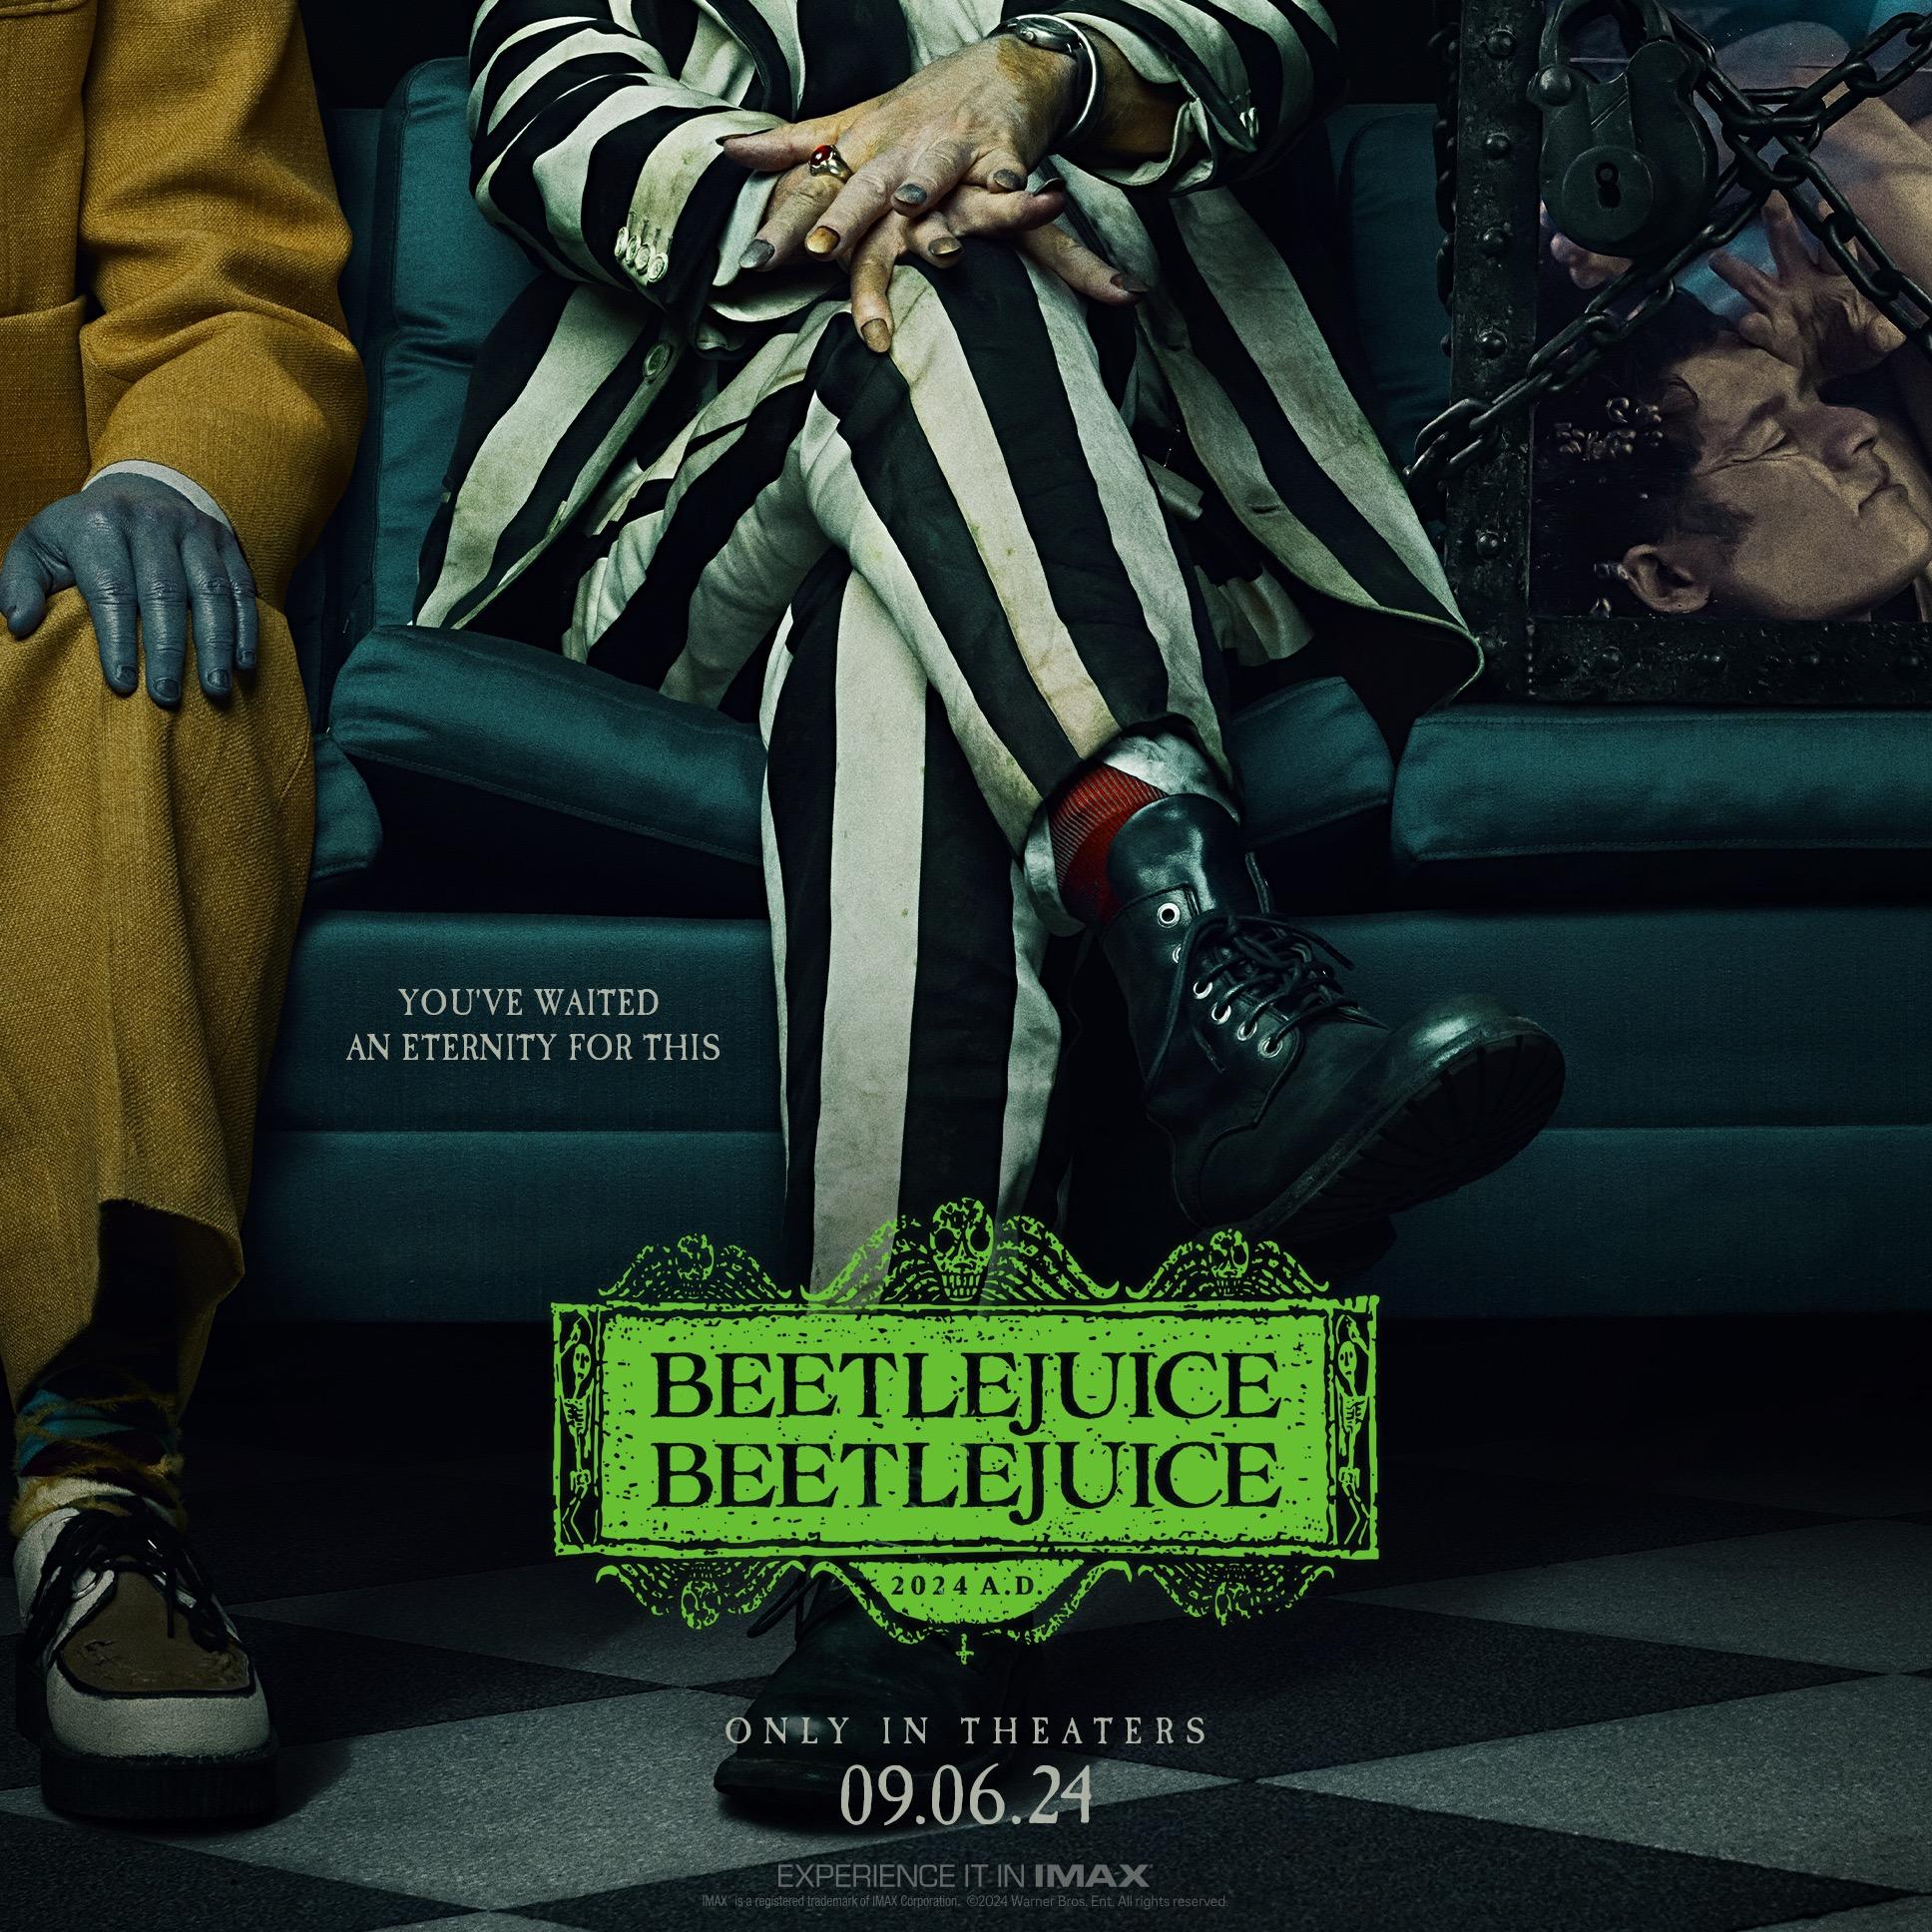 beetlejuice-beetlejuice-2-poster.jpg